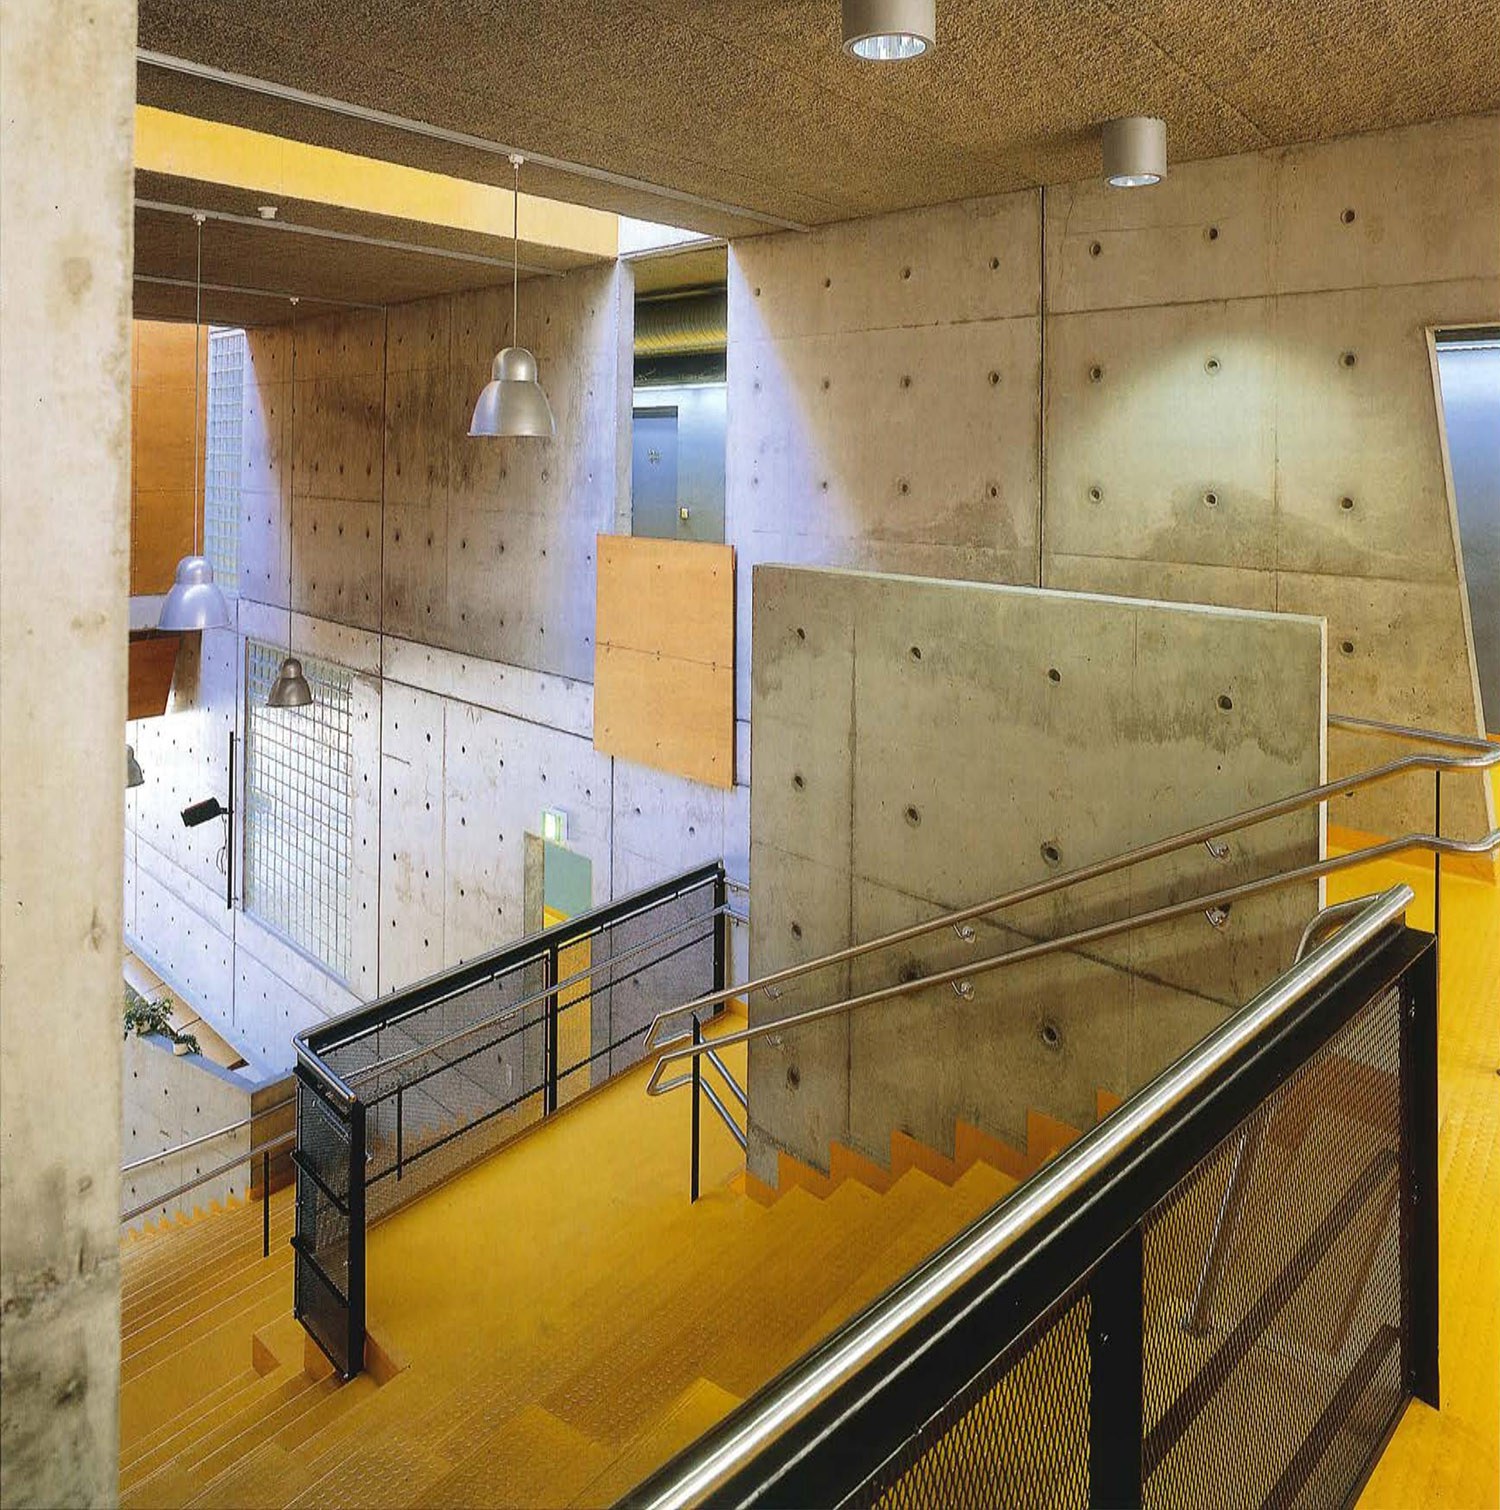 Koulun keskusaulassa sijaitseva auditorio, jonka eri tasanteet on erotettu teräsverkkokaiteilla. Keskusaulan seinät ovat maalaamatonta puhtaaksi valettua betonia.